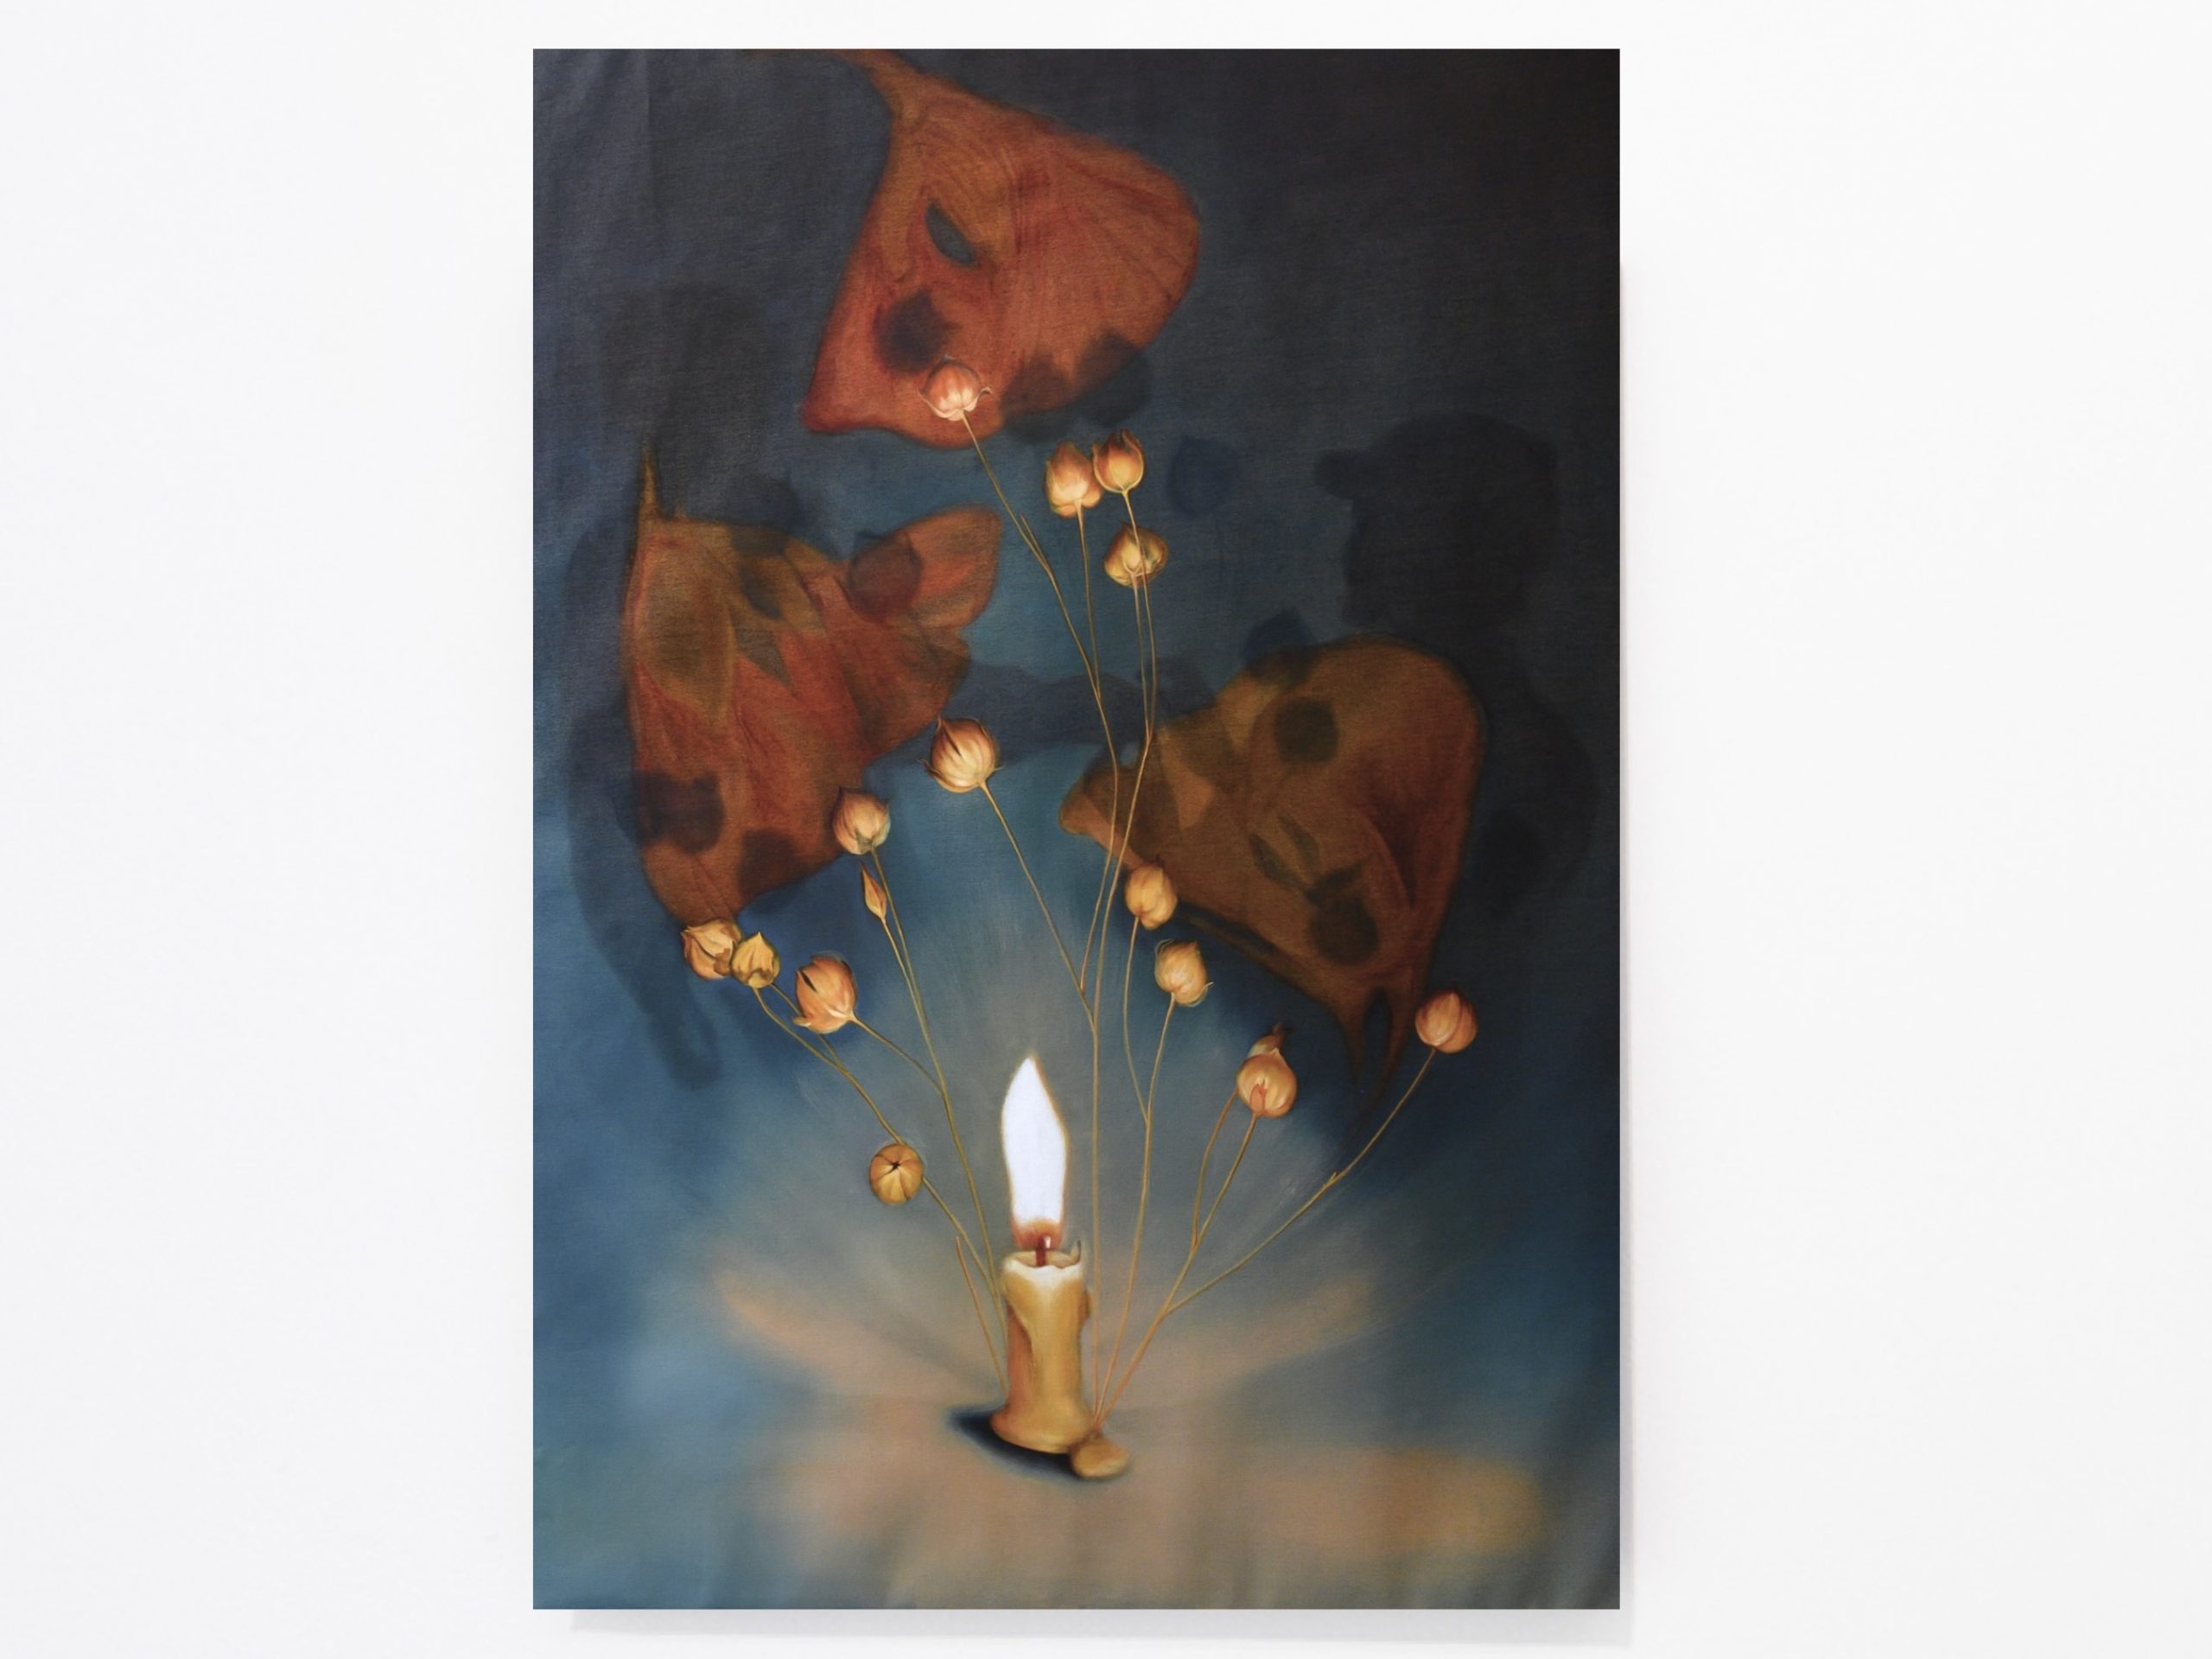 Hromovytsia, thunder candle, 2024, oil on linen, 140x200x2.5cm